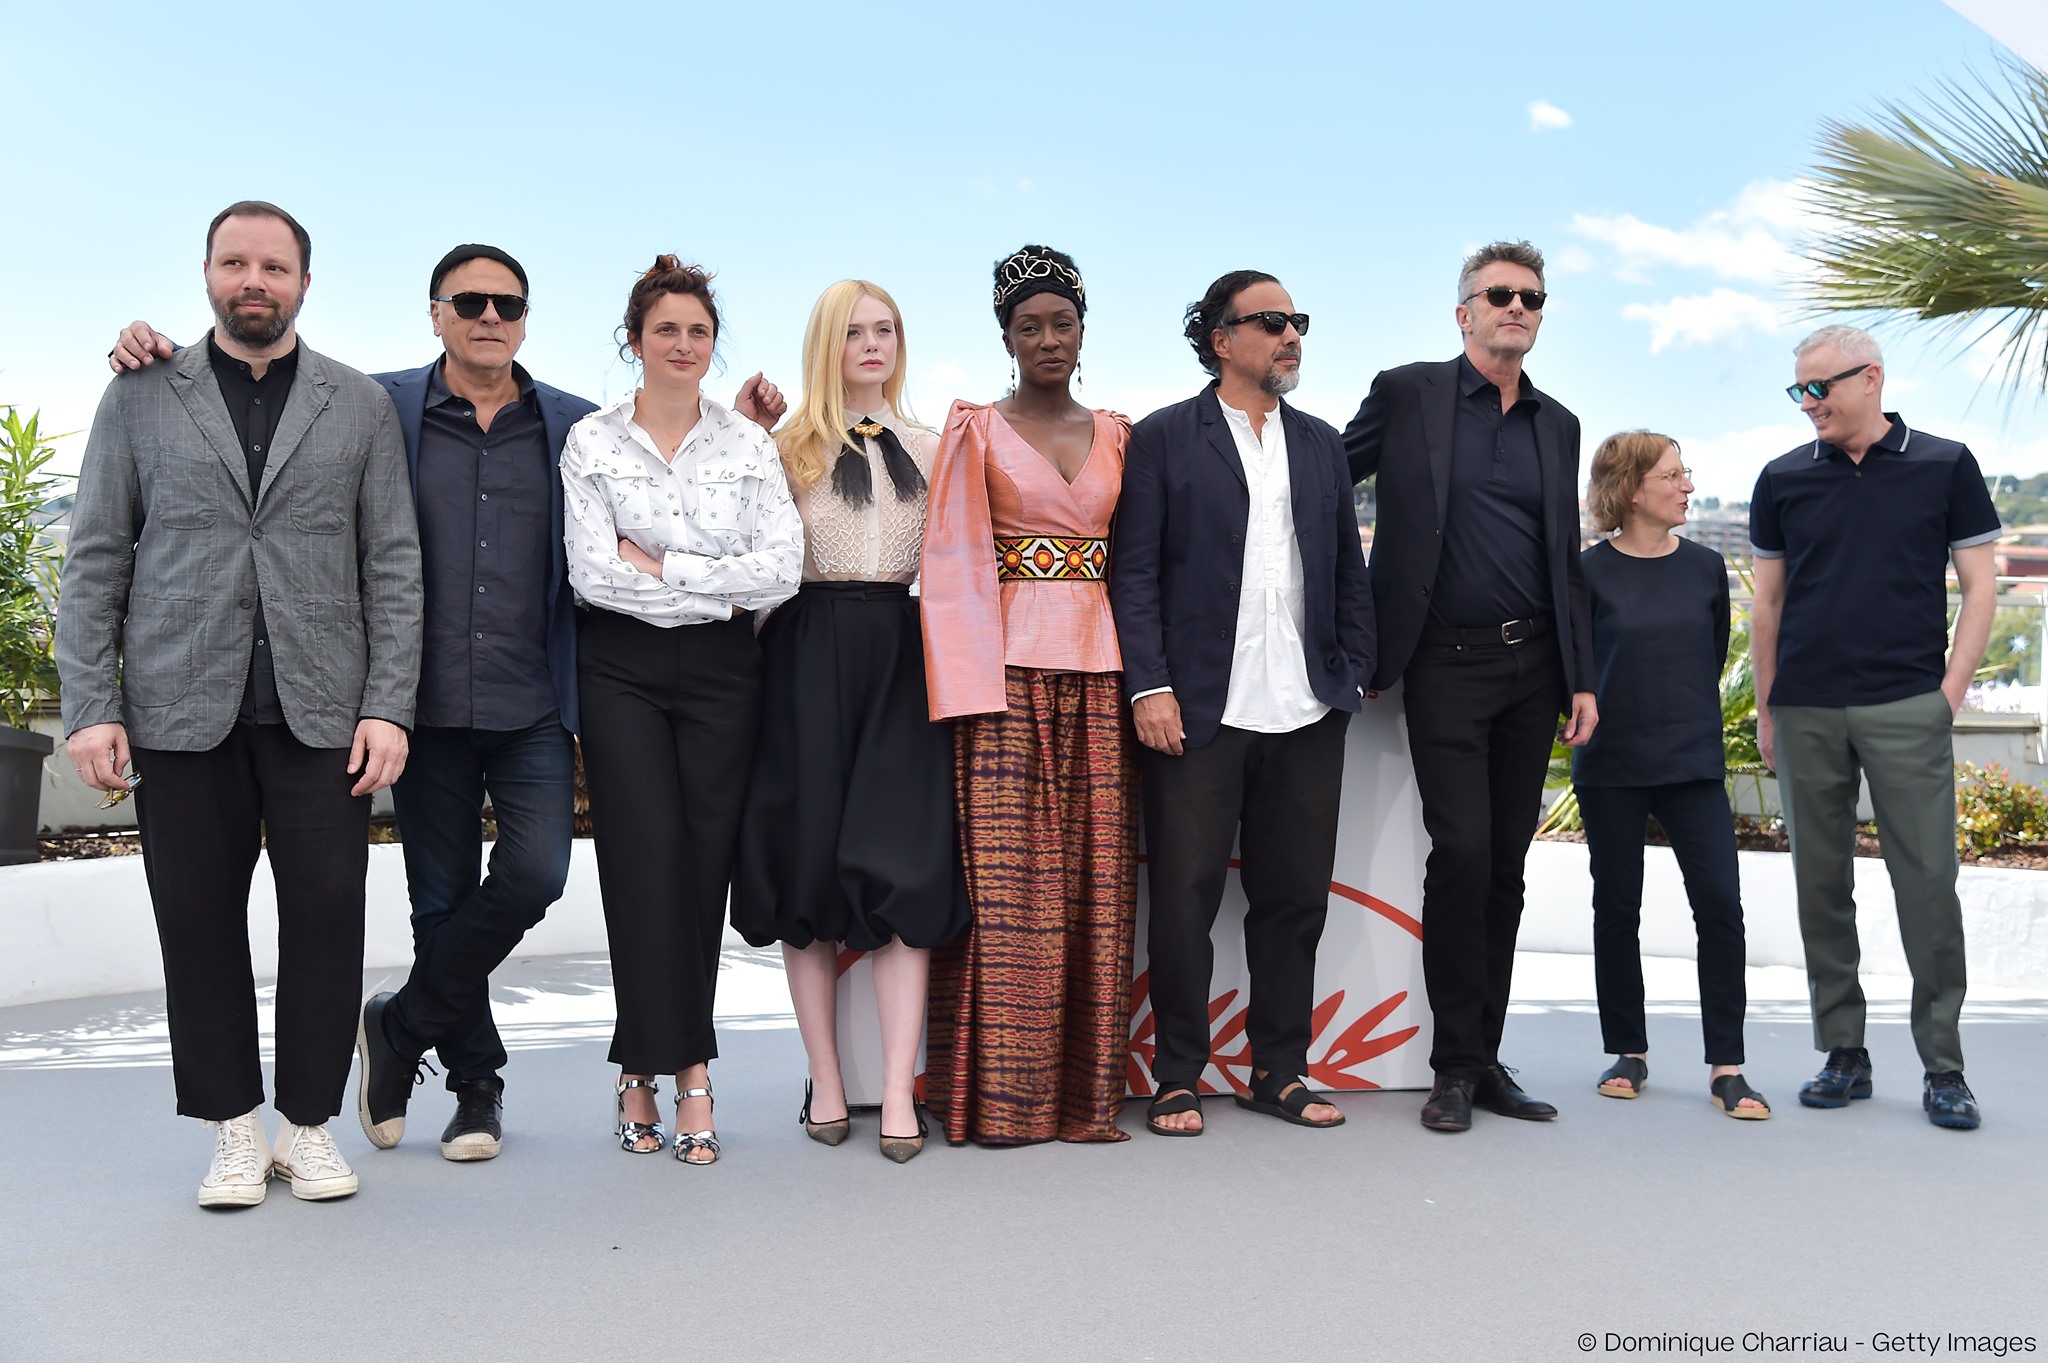 Cannes 2019, Alejandro González Iñárritu: "Il cinema va vissuto in comunità. Non condanno lo streaming, ma è un'altra cosa."